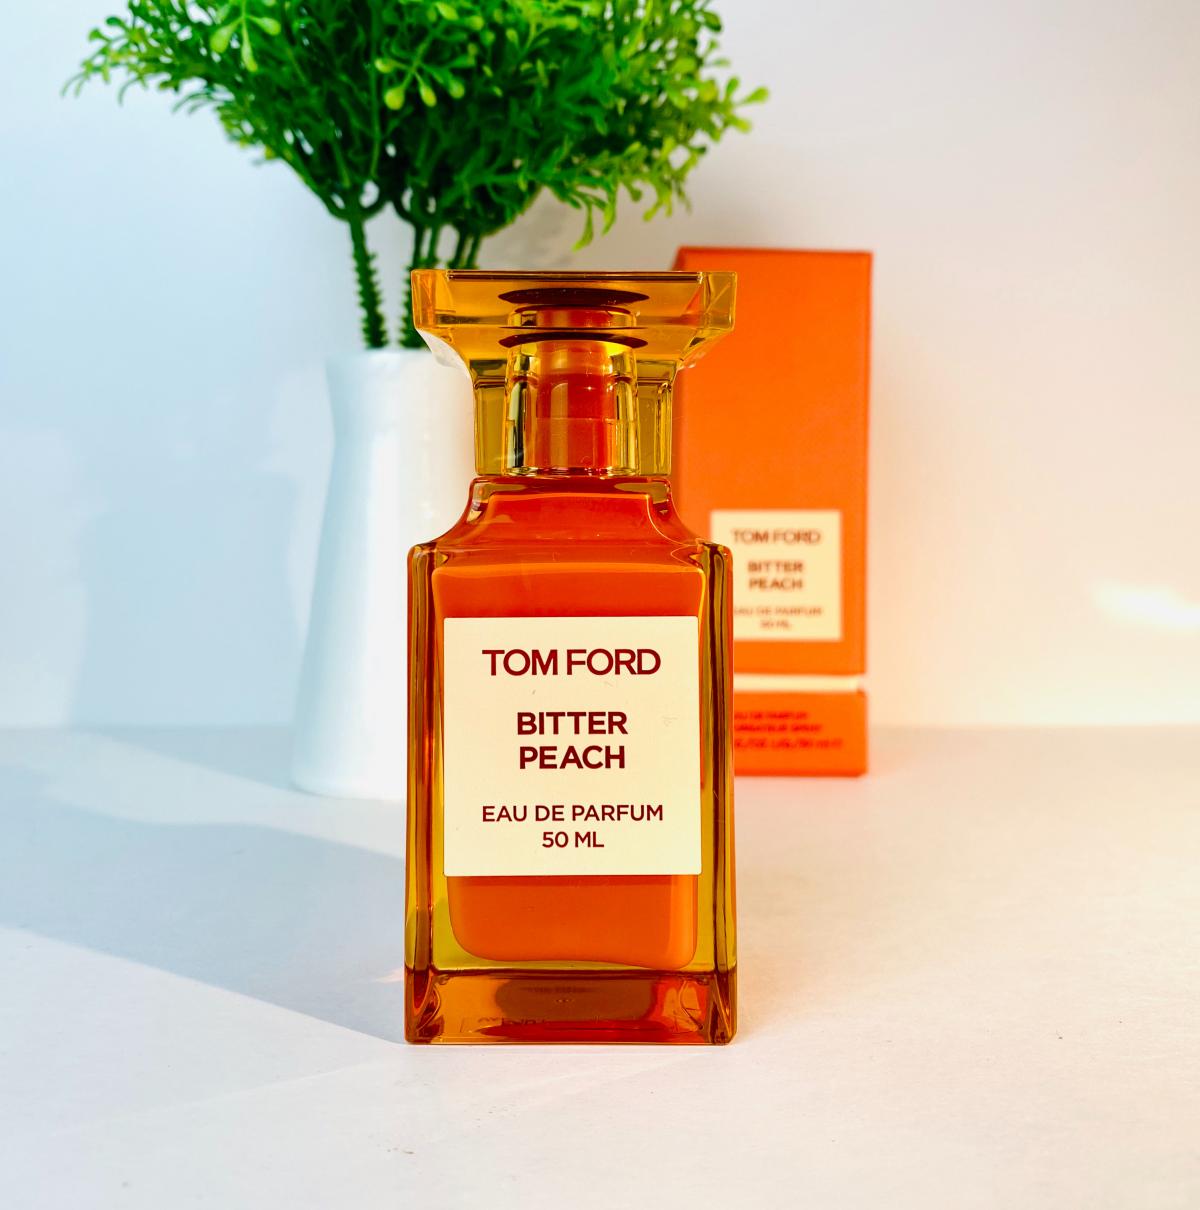 Bitter Peach Tom Ford Parfum - ein neues Parfum für Frauen und Männer 2020